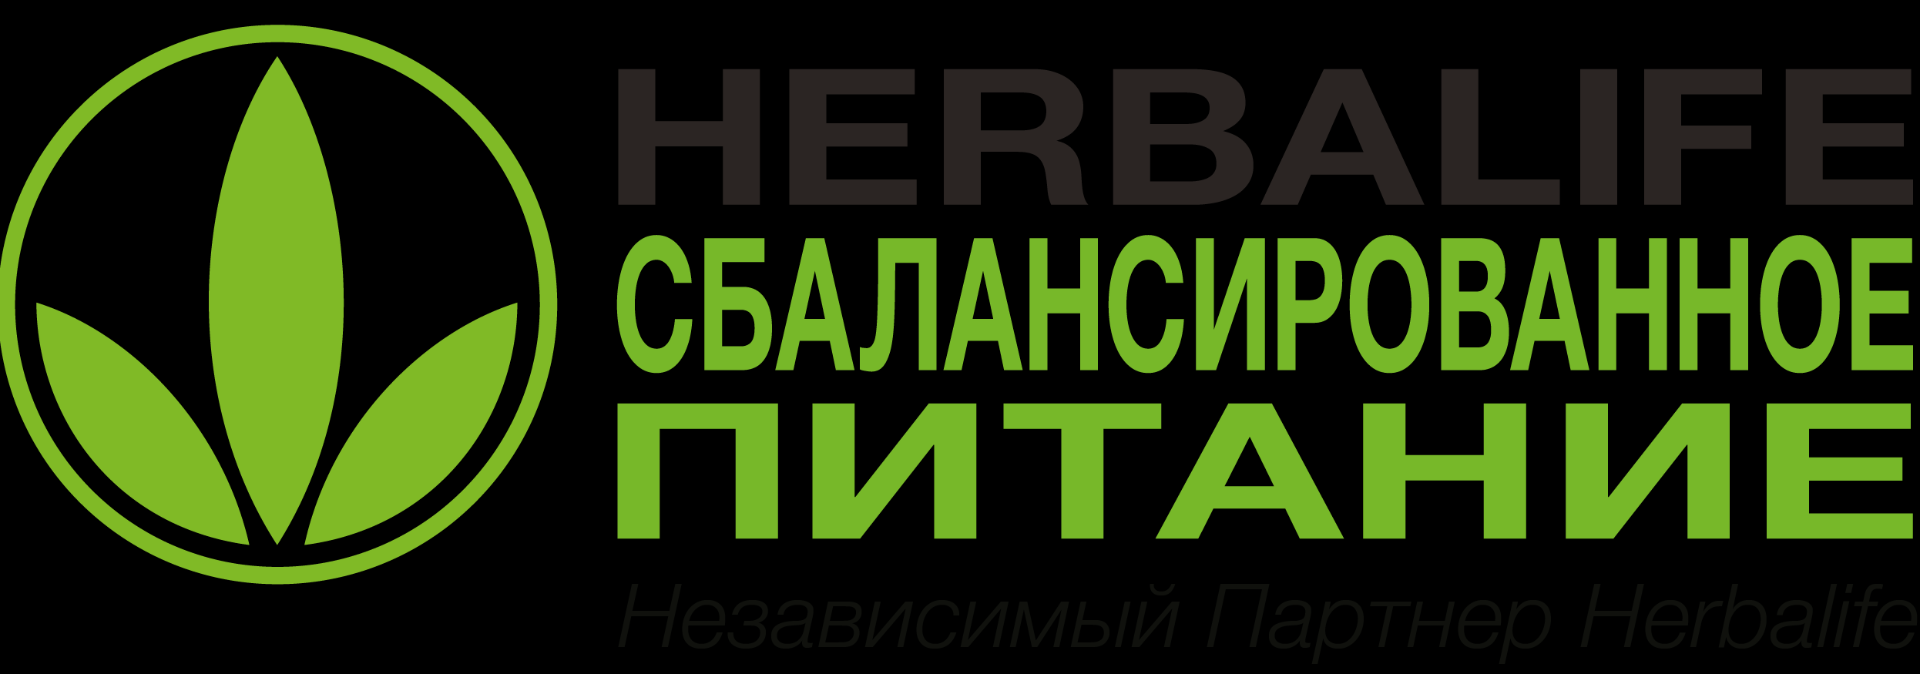 Снижение веса в Ставрополе logo.png